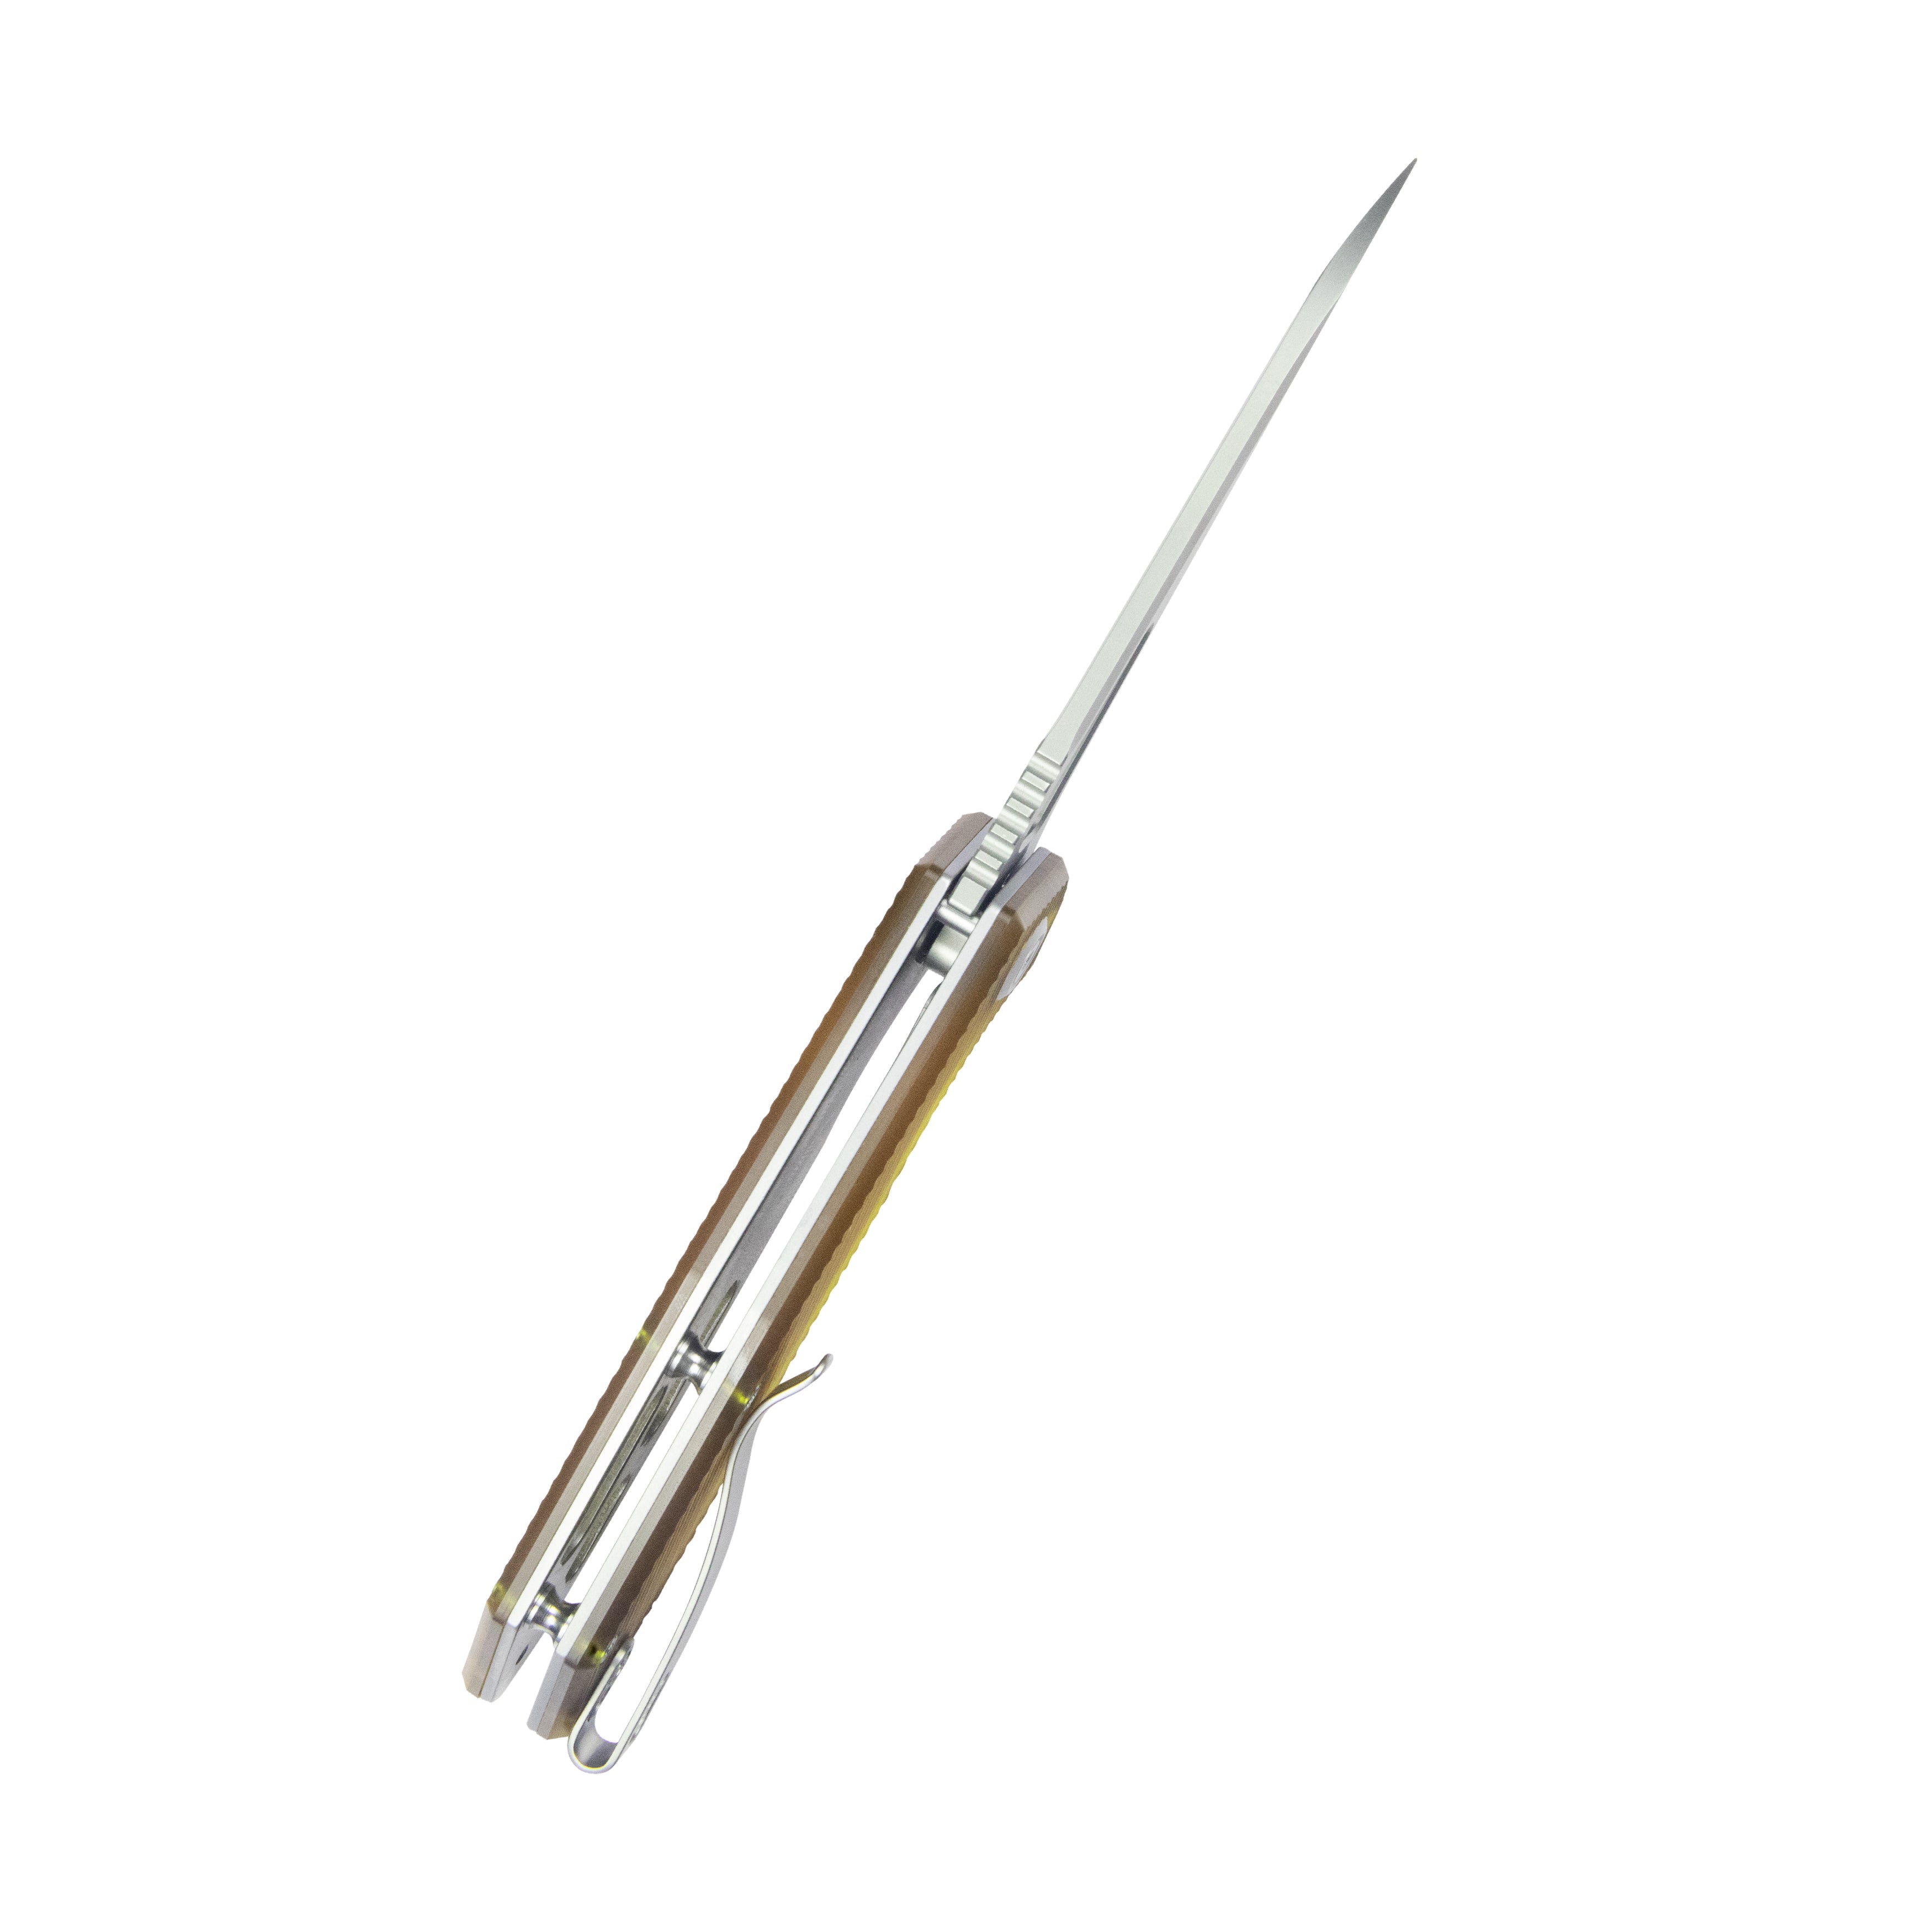 Kubey Vagrant Liner Lock Folding Knife Ultem Handle 3.1" Sandblast 14C28N KU291Q